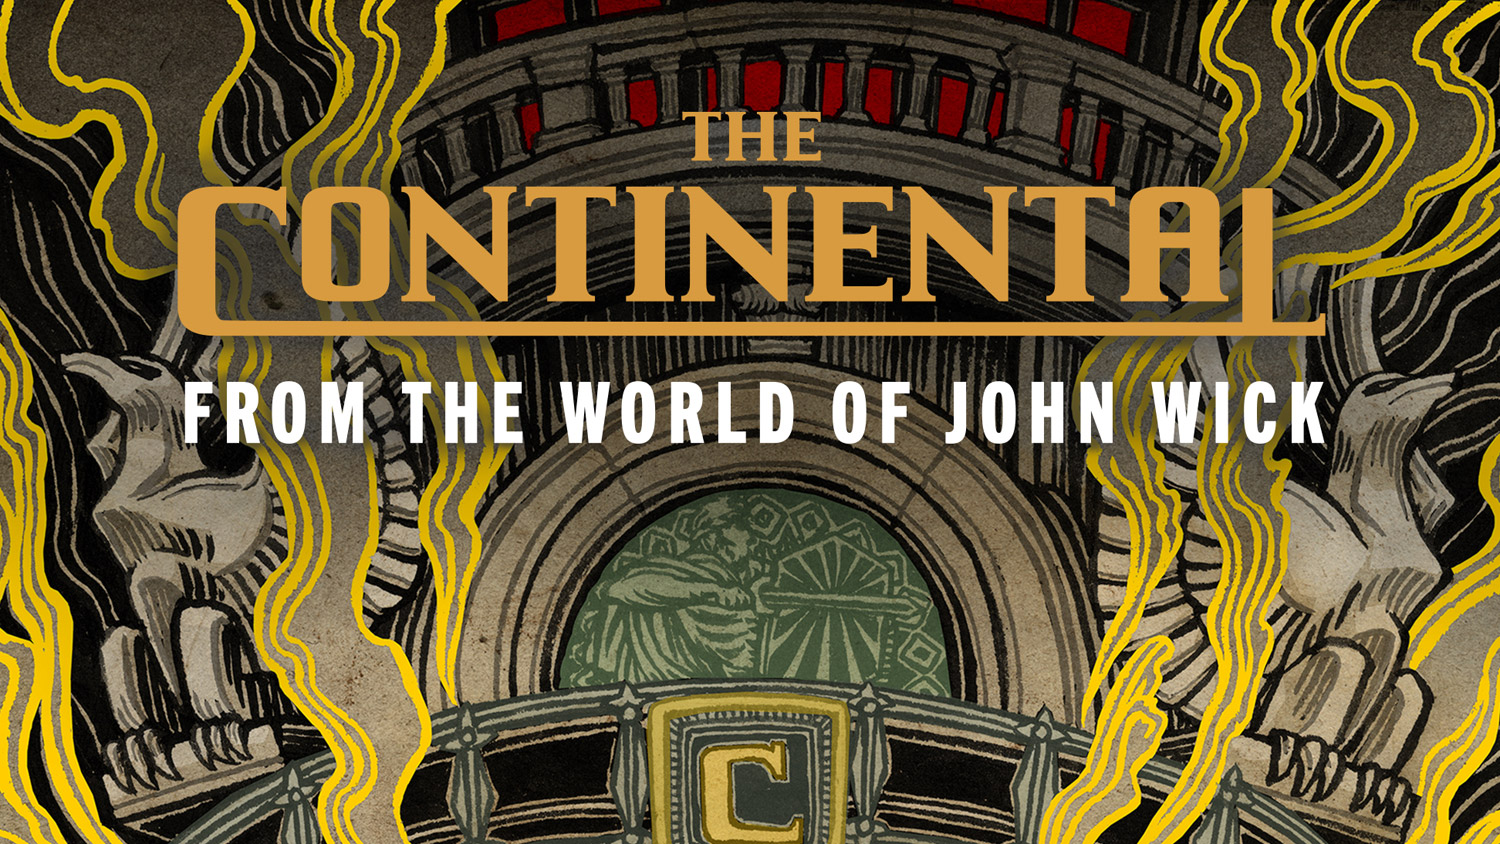 The Continental - la fan art di Yuko Shimizu (estratto)